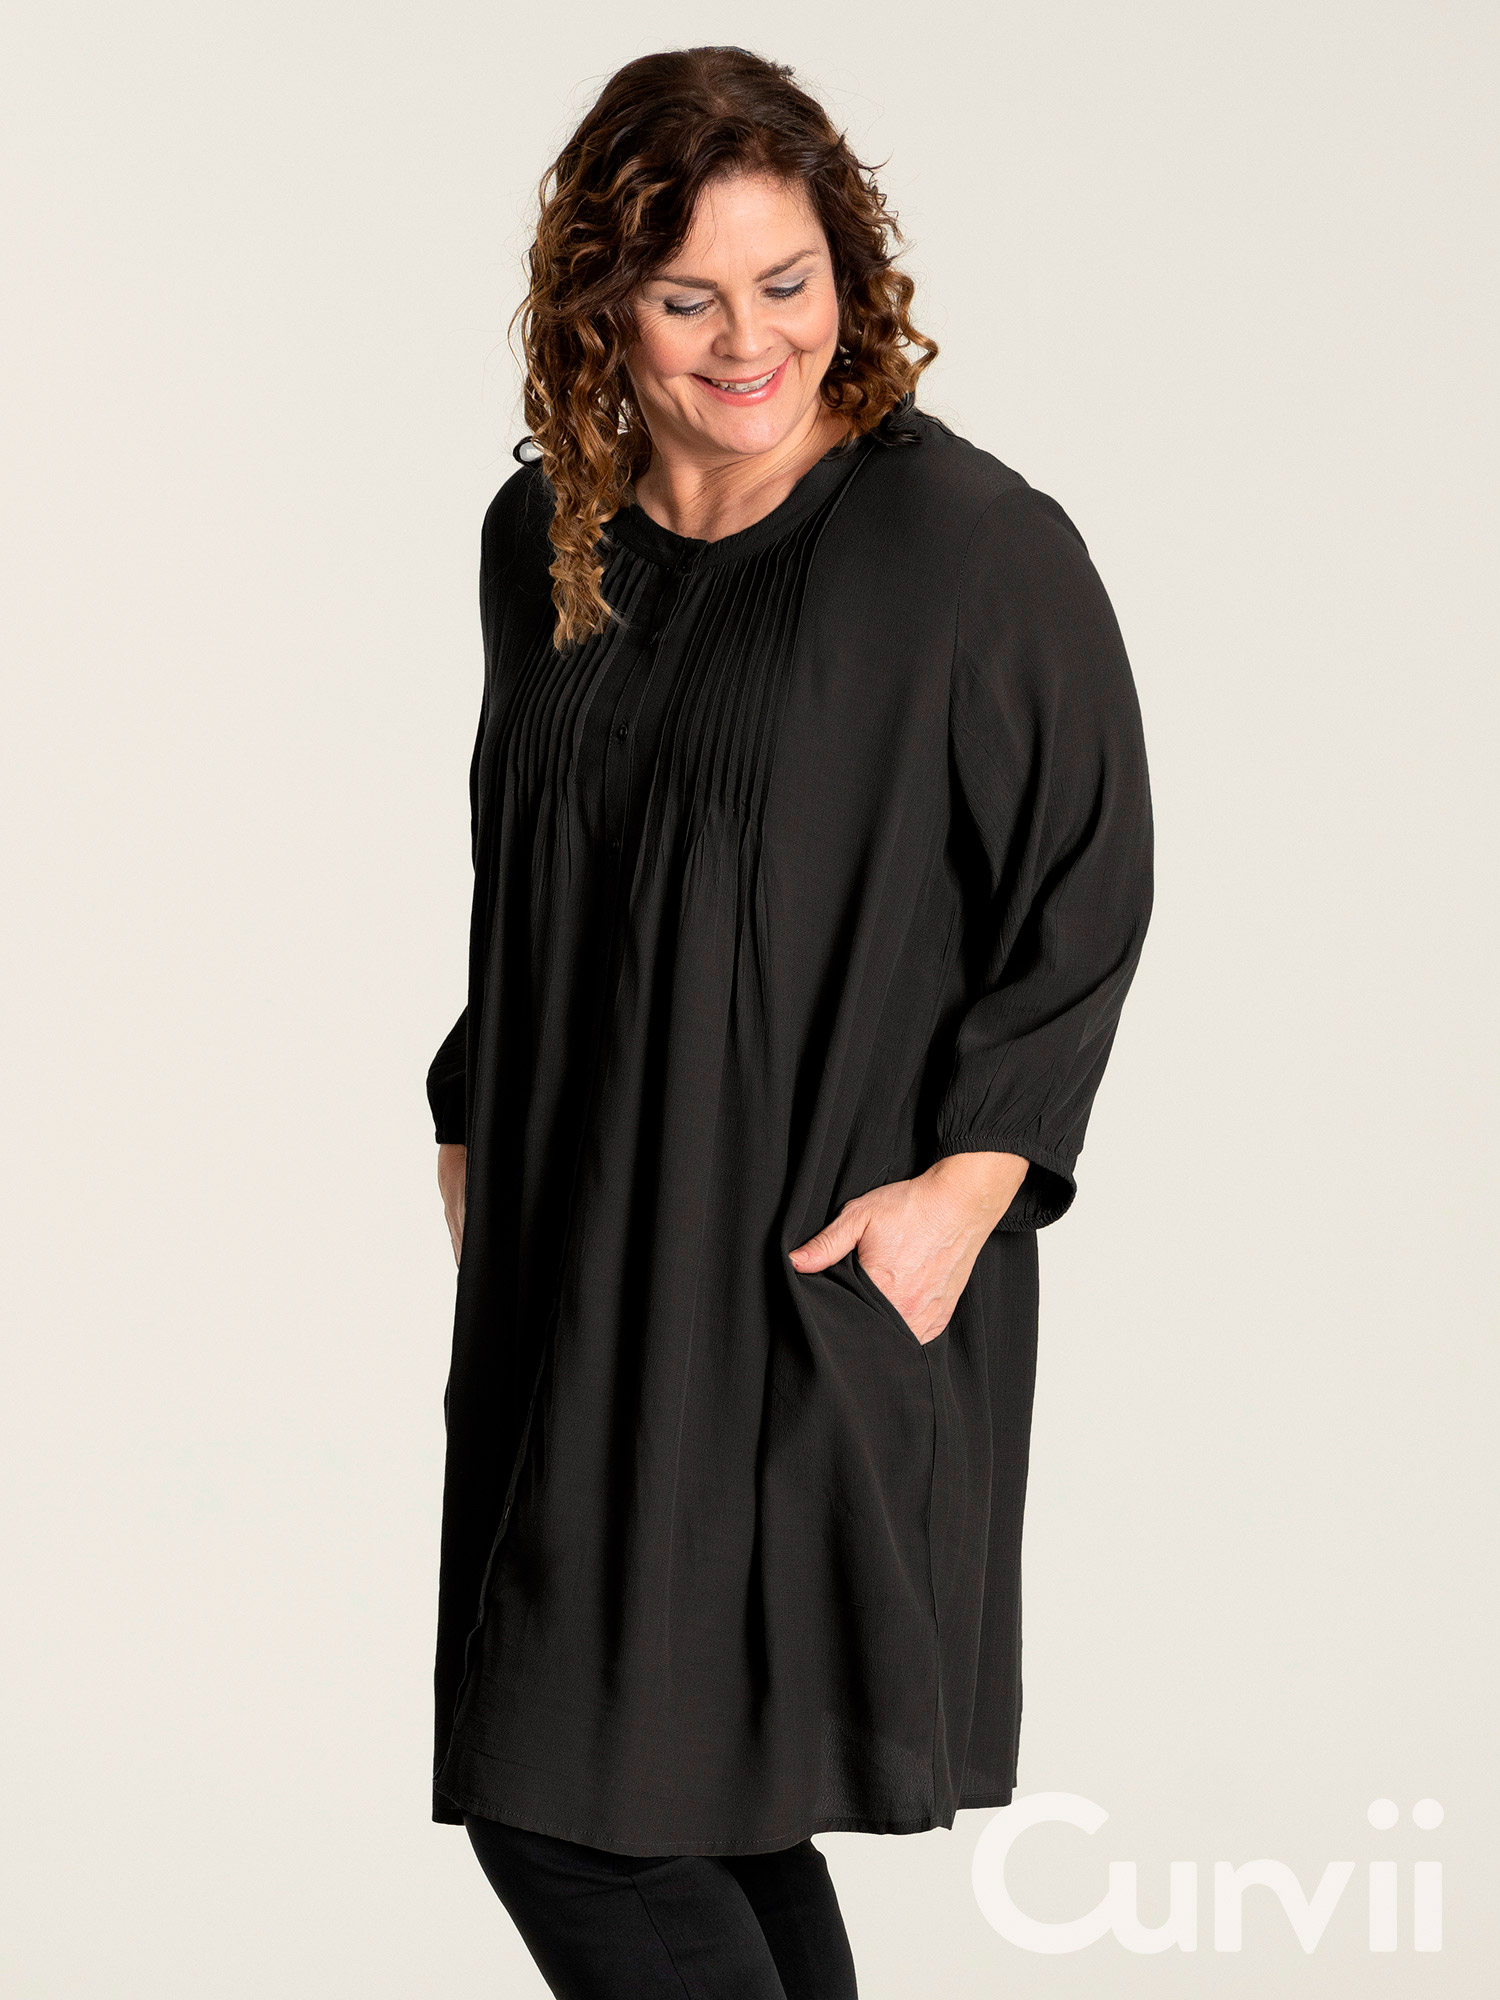 JOHANNE - Flot sort skjorte tunika med lommer fra Gozzip